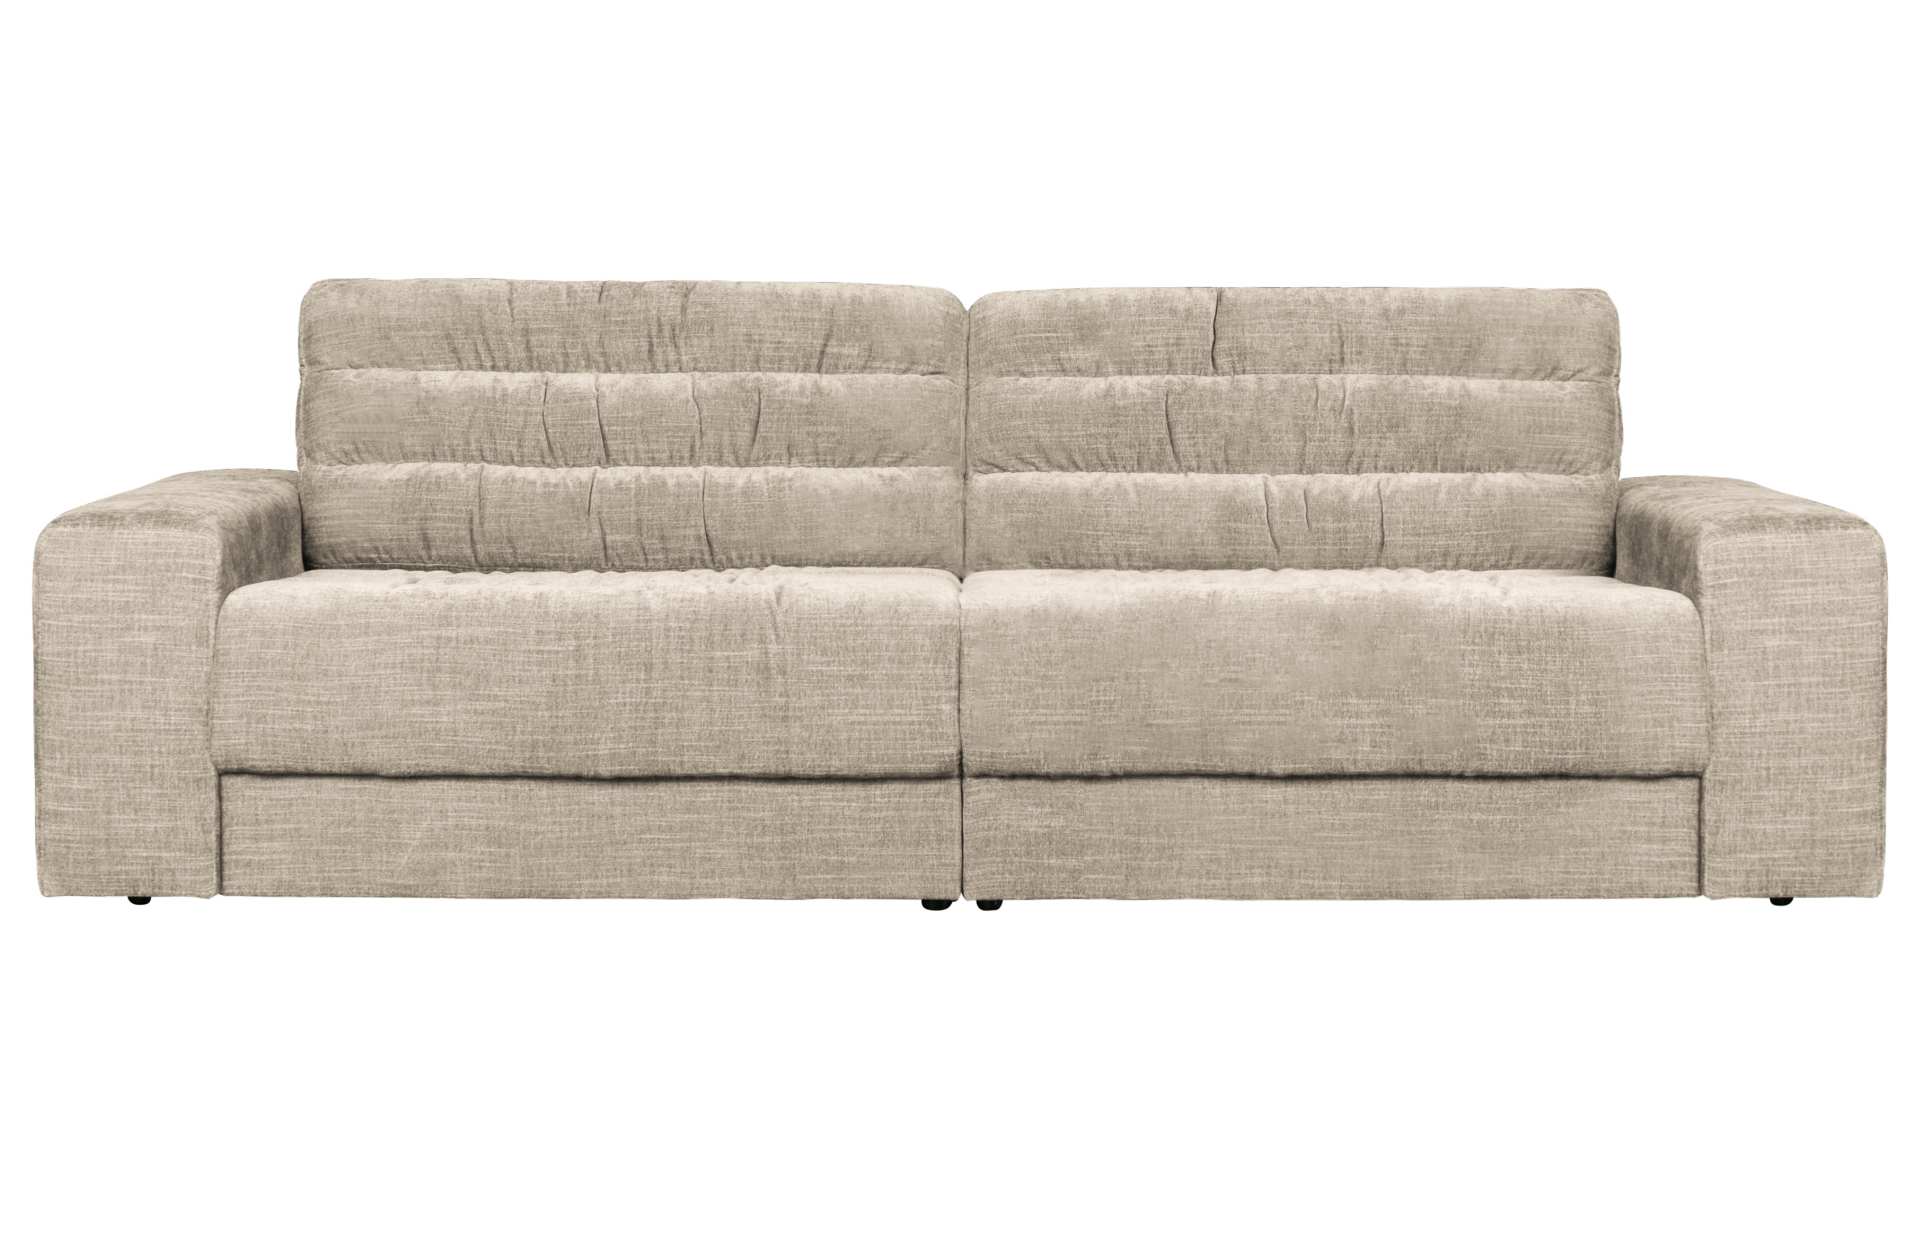 Das Sofa Date überzeugt mit seinem klassischen Design. Gefertigt wurde es aus einem Vintage Stoff, welcher einen Nougat Farbton besitzen. Das Gestell ist aus Kunststoff und hat eine schwarze Farbe. Das Sofa hat eine Breite von 226 cm.